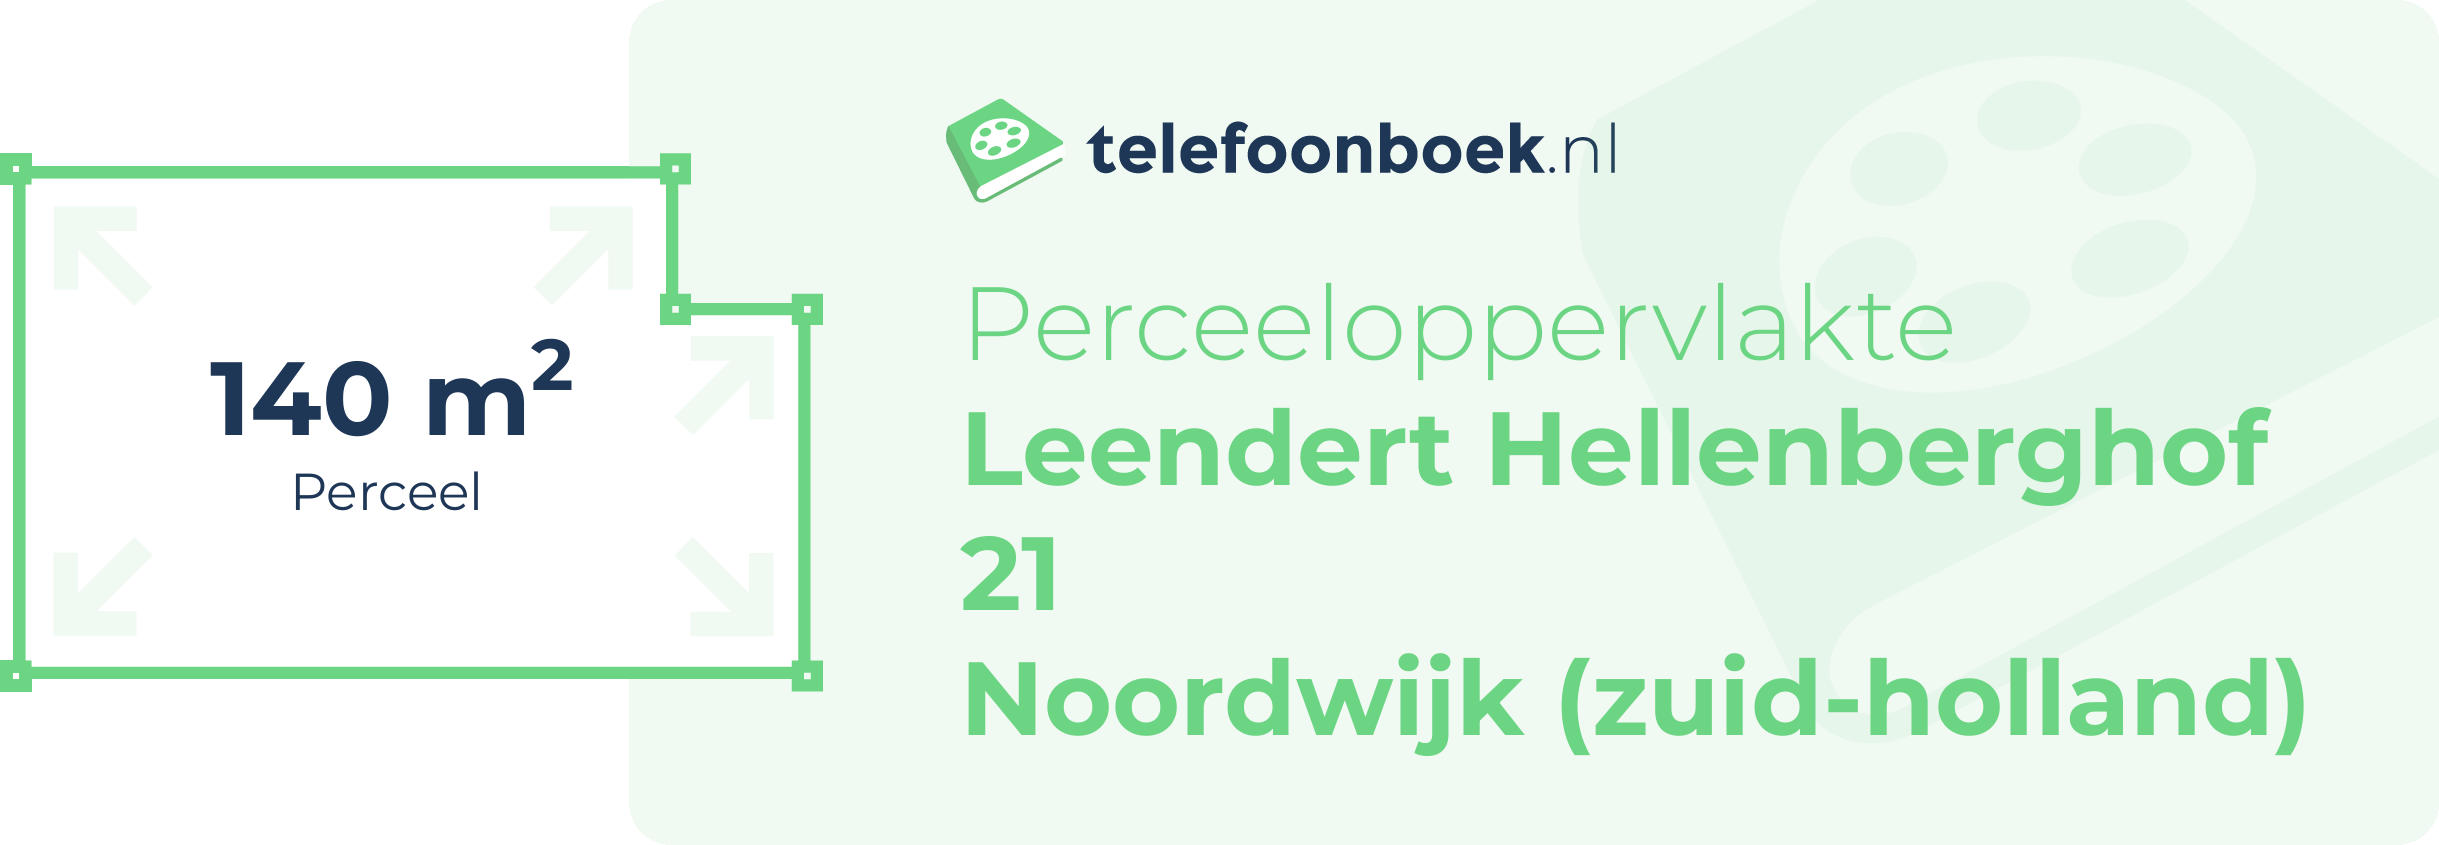 Perceeloppervlakte Leendert Hellenberghof 21 Noordwijk (Zuid-Holland)